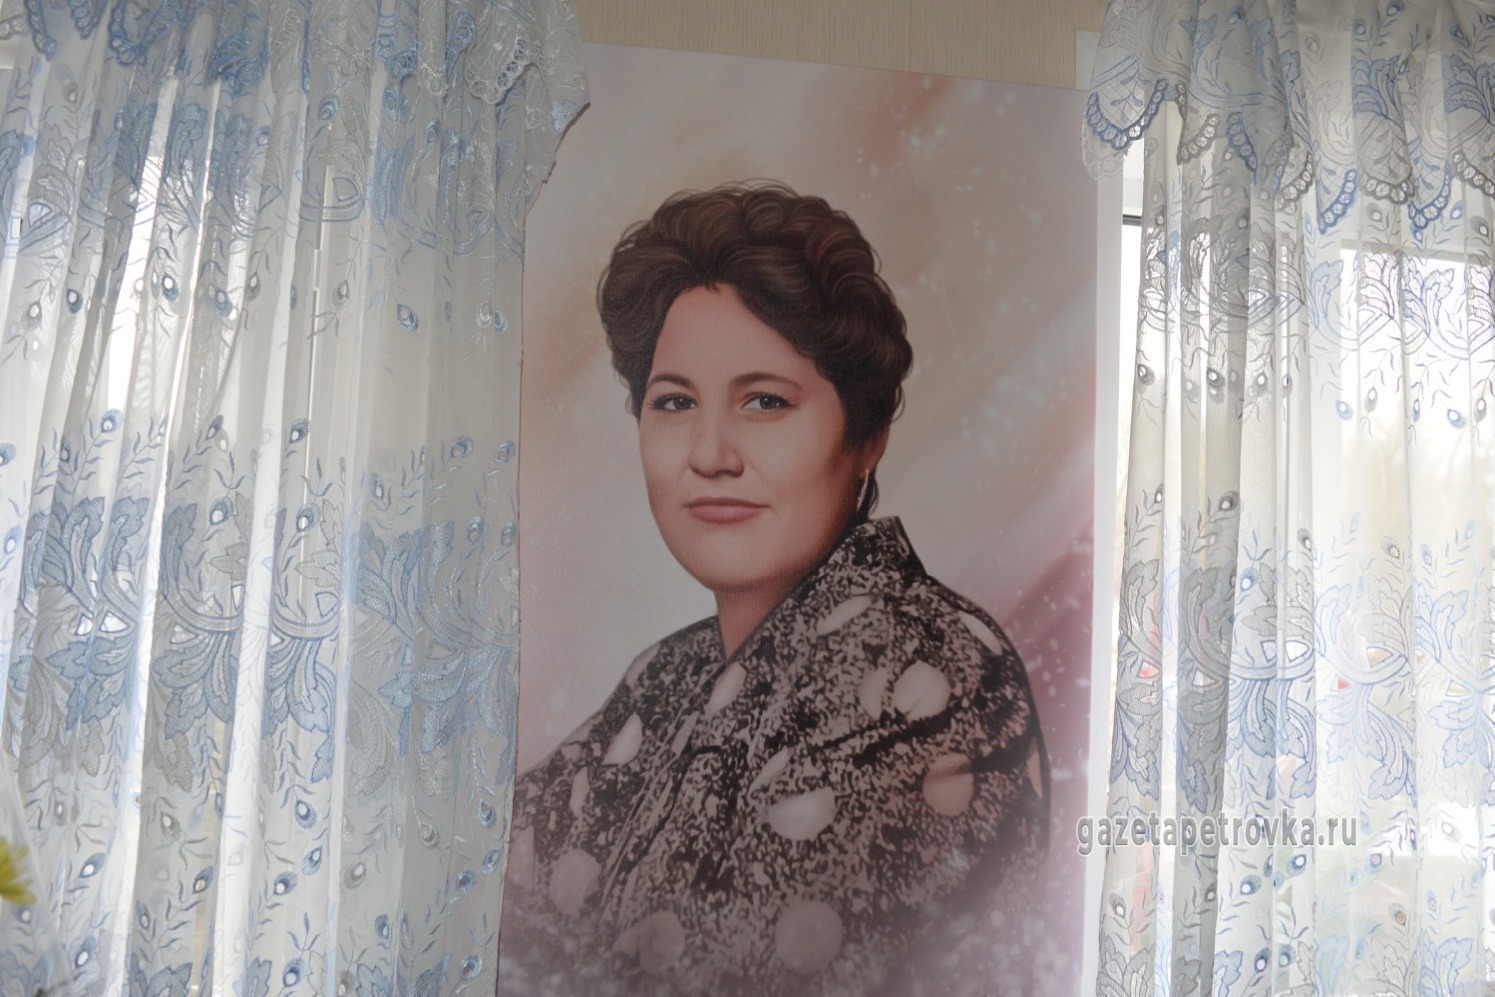 Внук Олег распечатал портрет умершей мамы и повесил на стене у бабушки